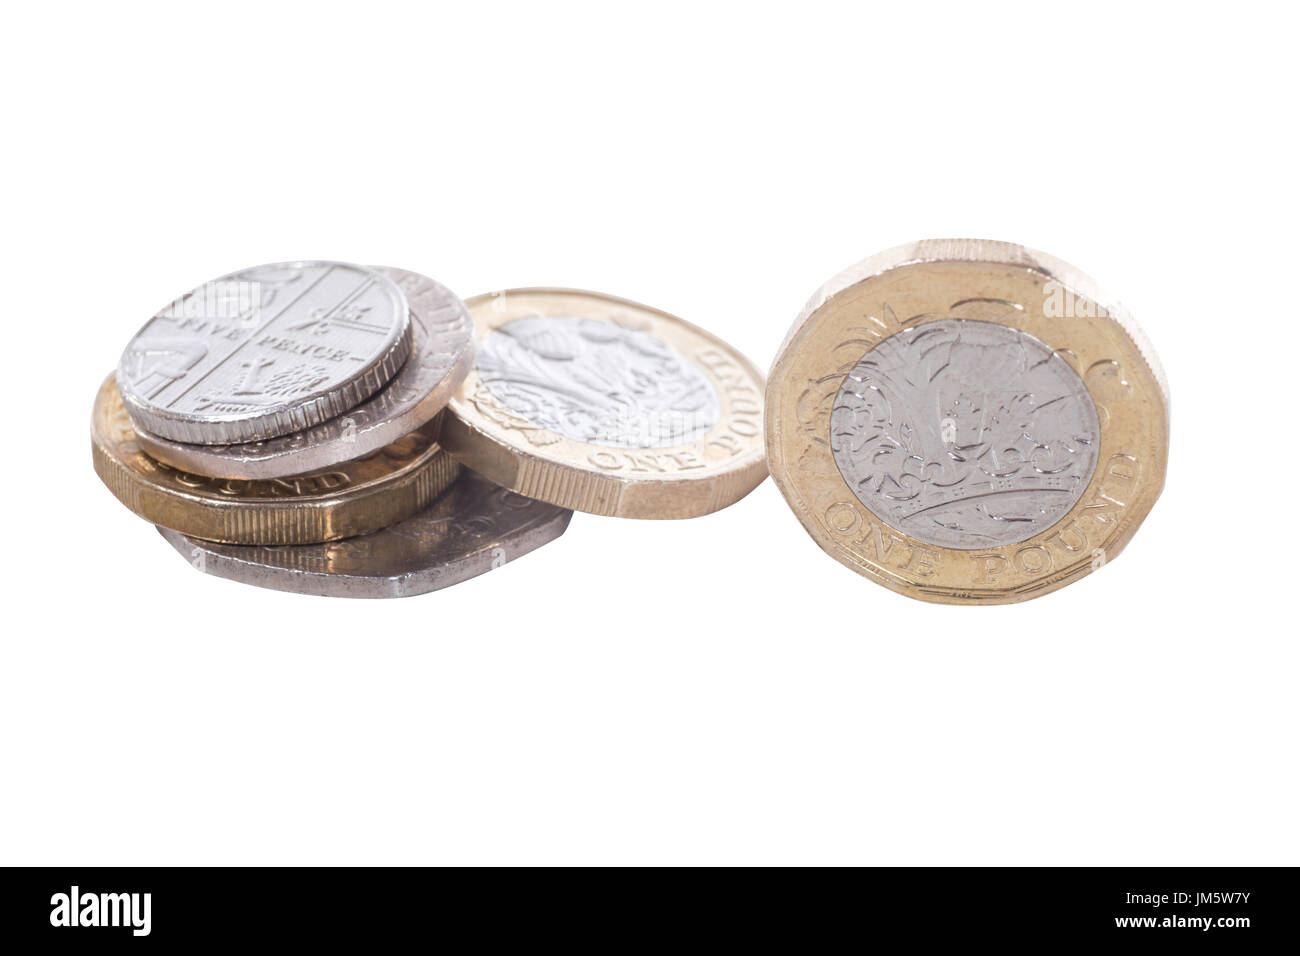 Palo isolata della nuova British pound coin che mostra il design dell'incisione in un concetto finanziario Foto Stock